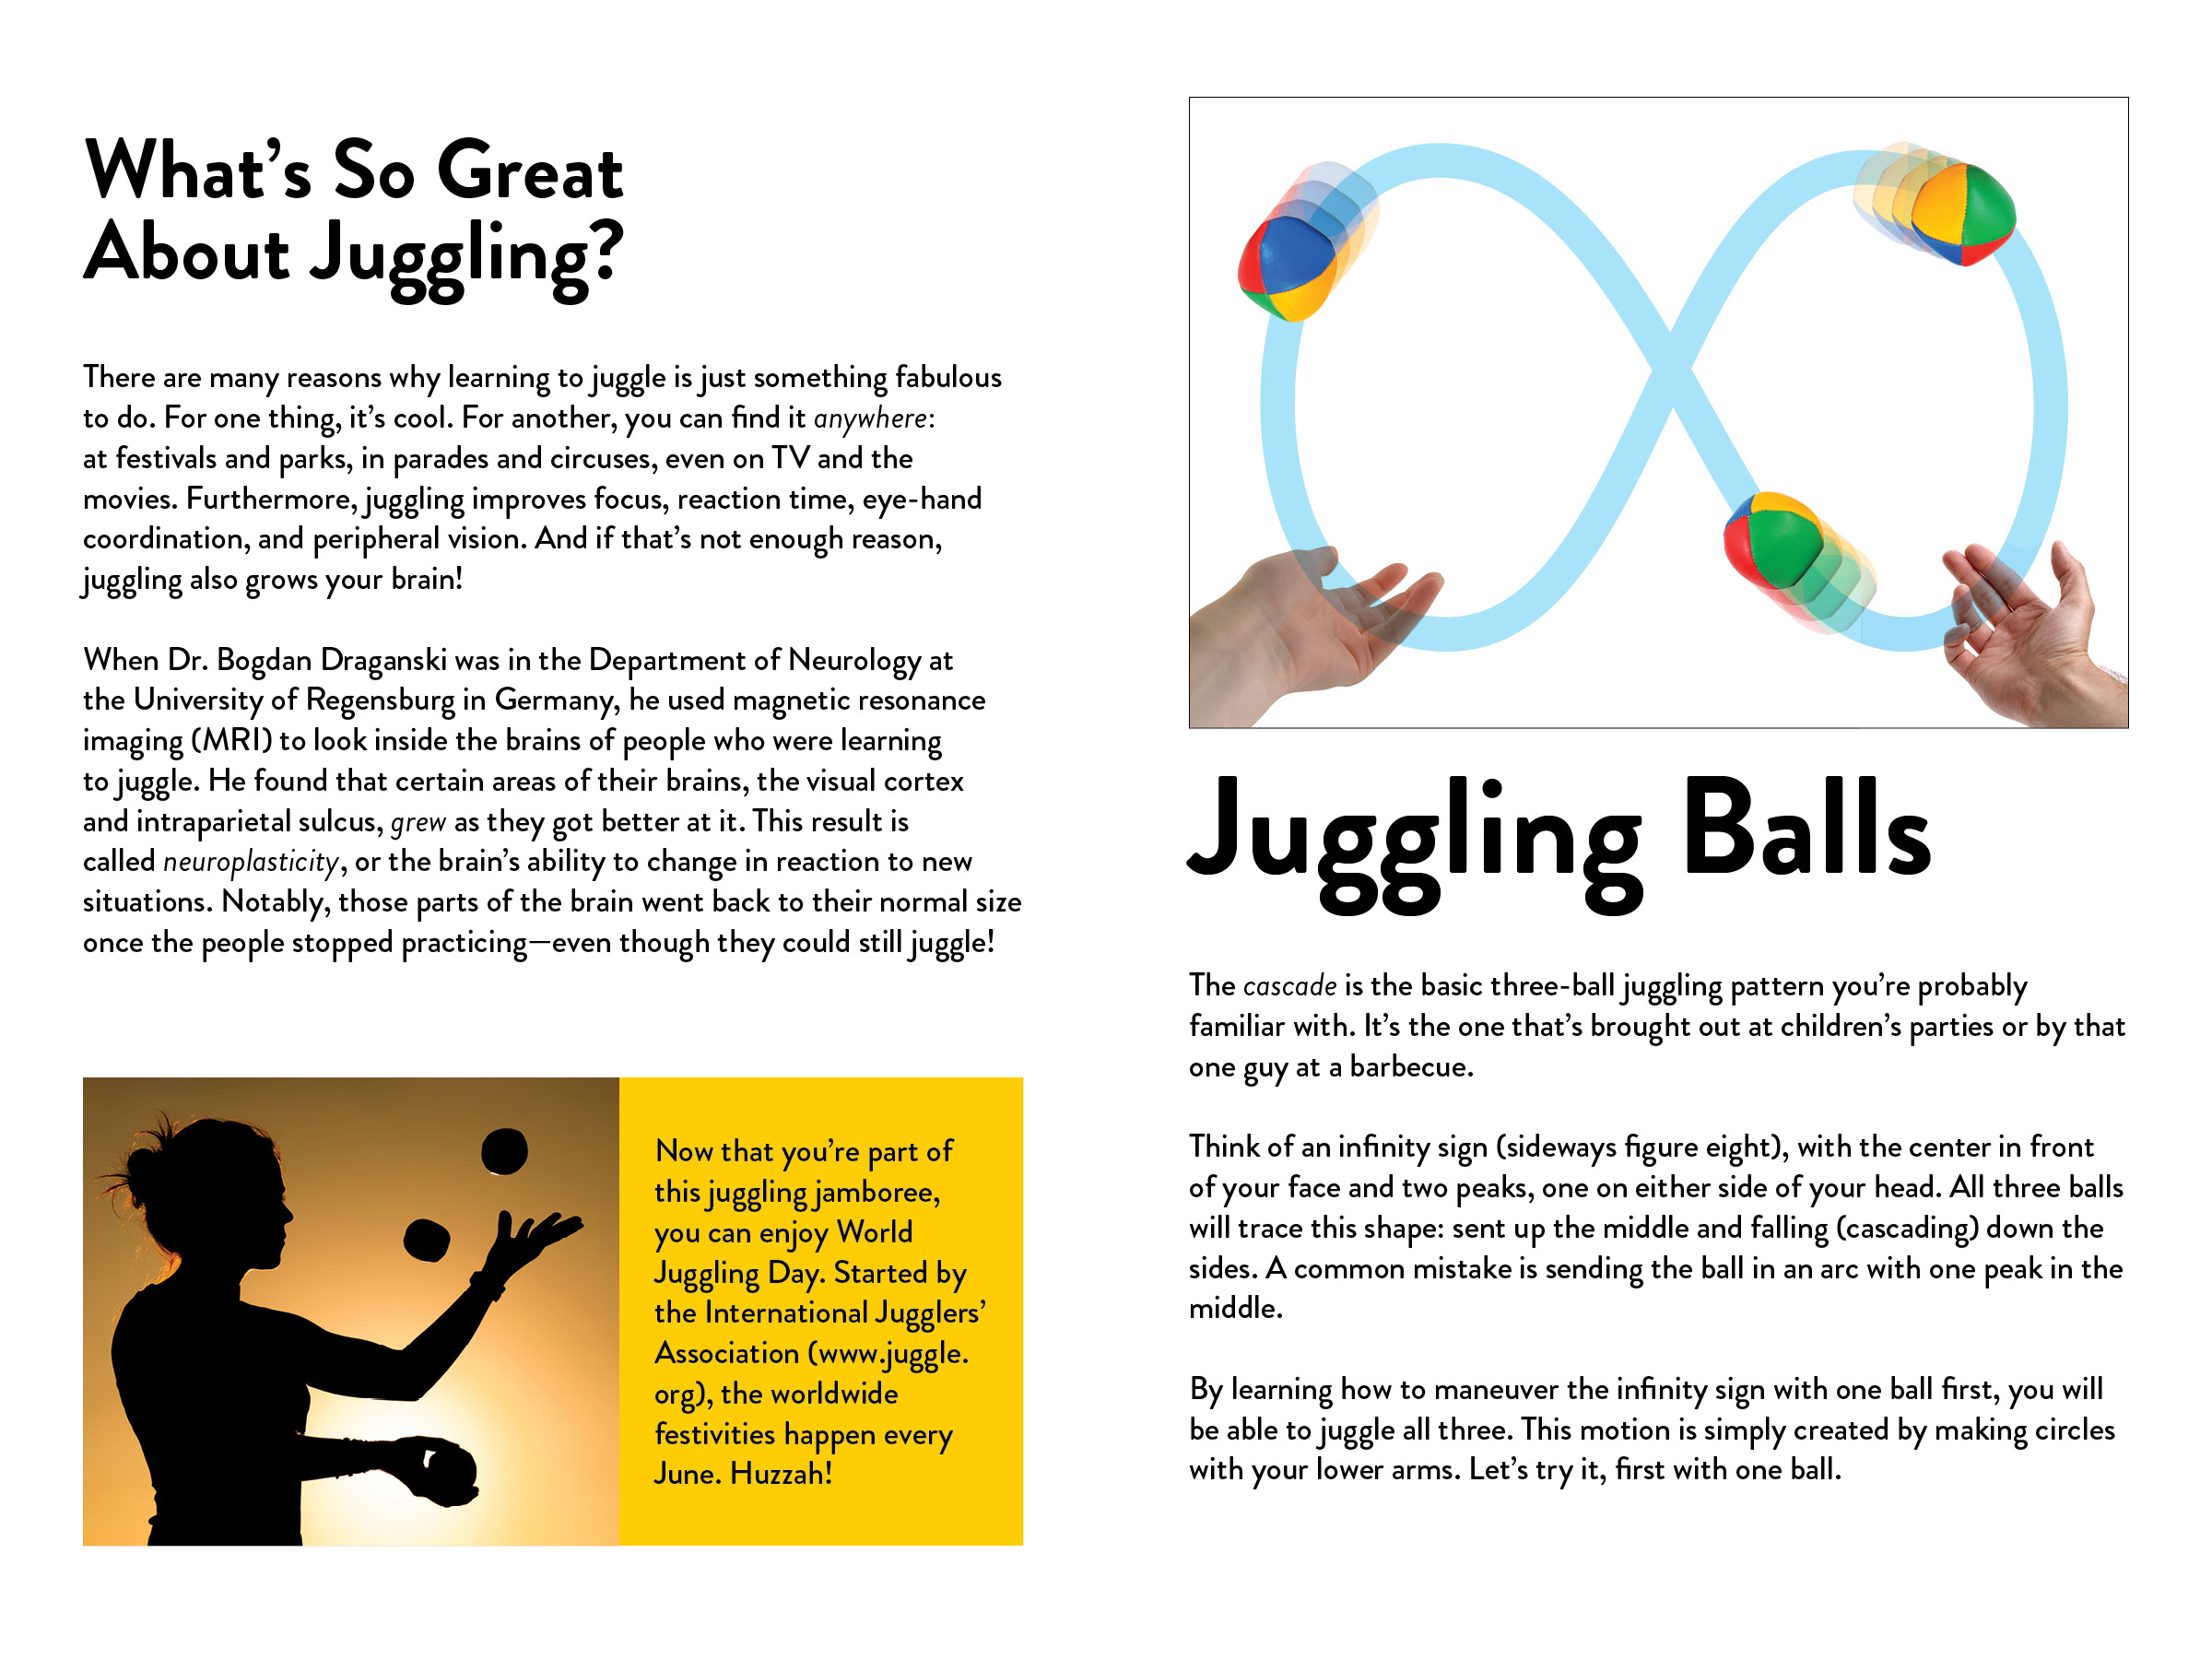 Juggling kit